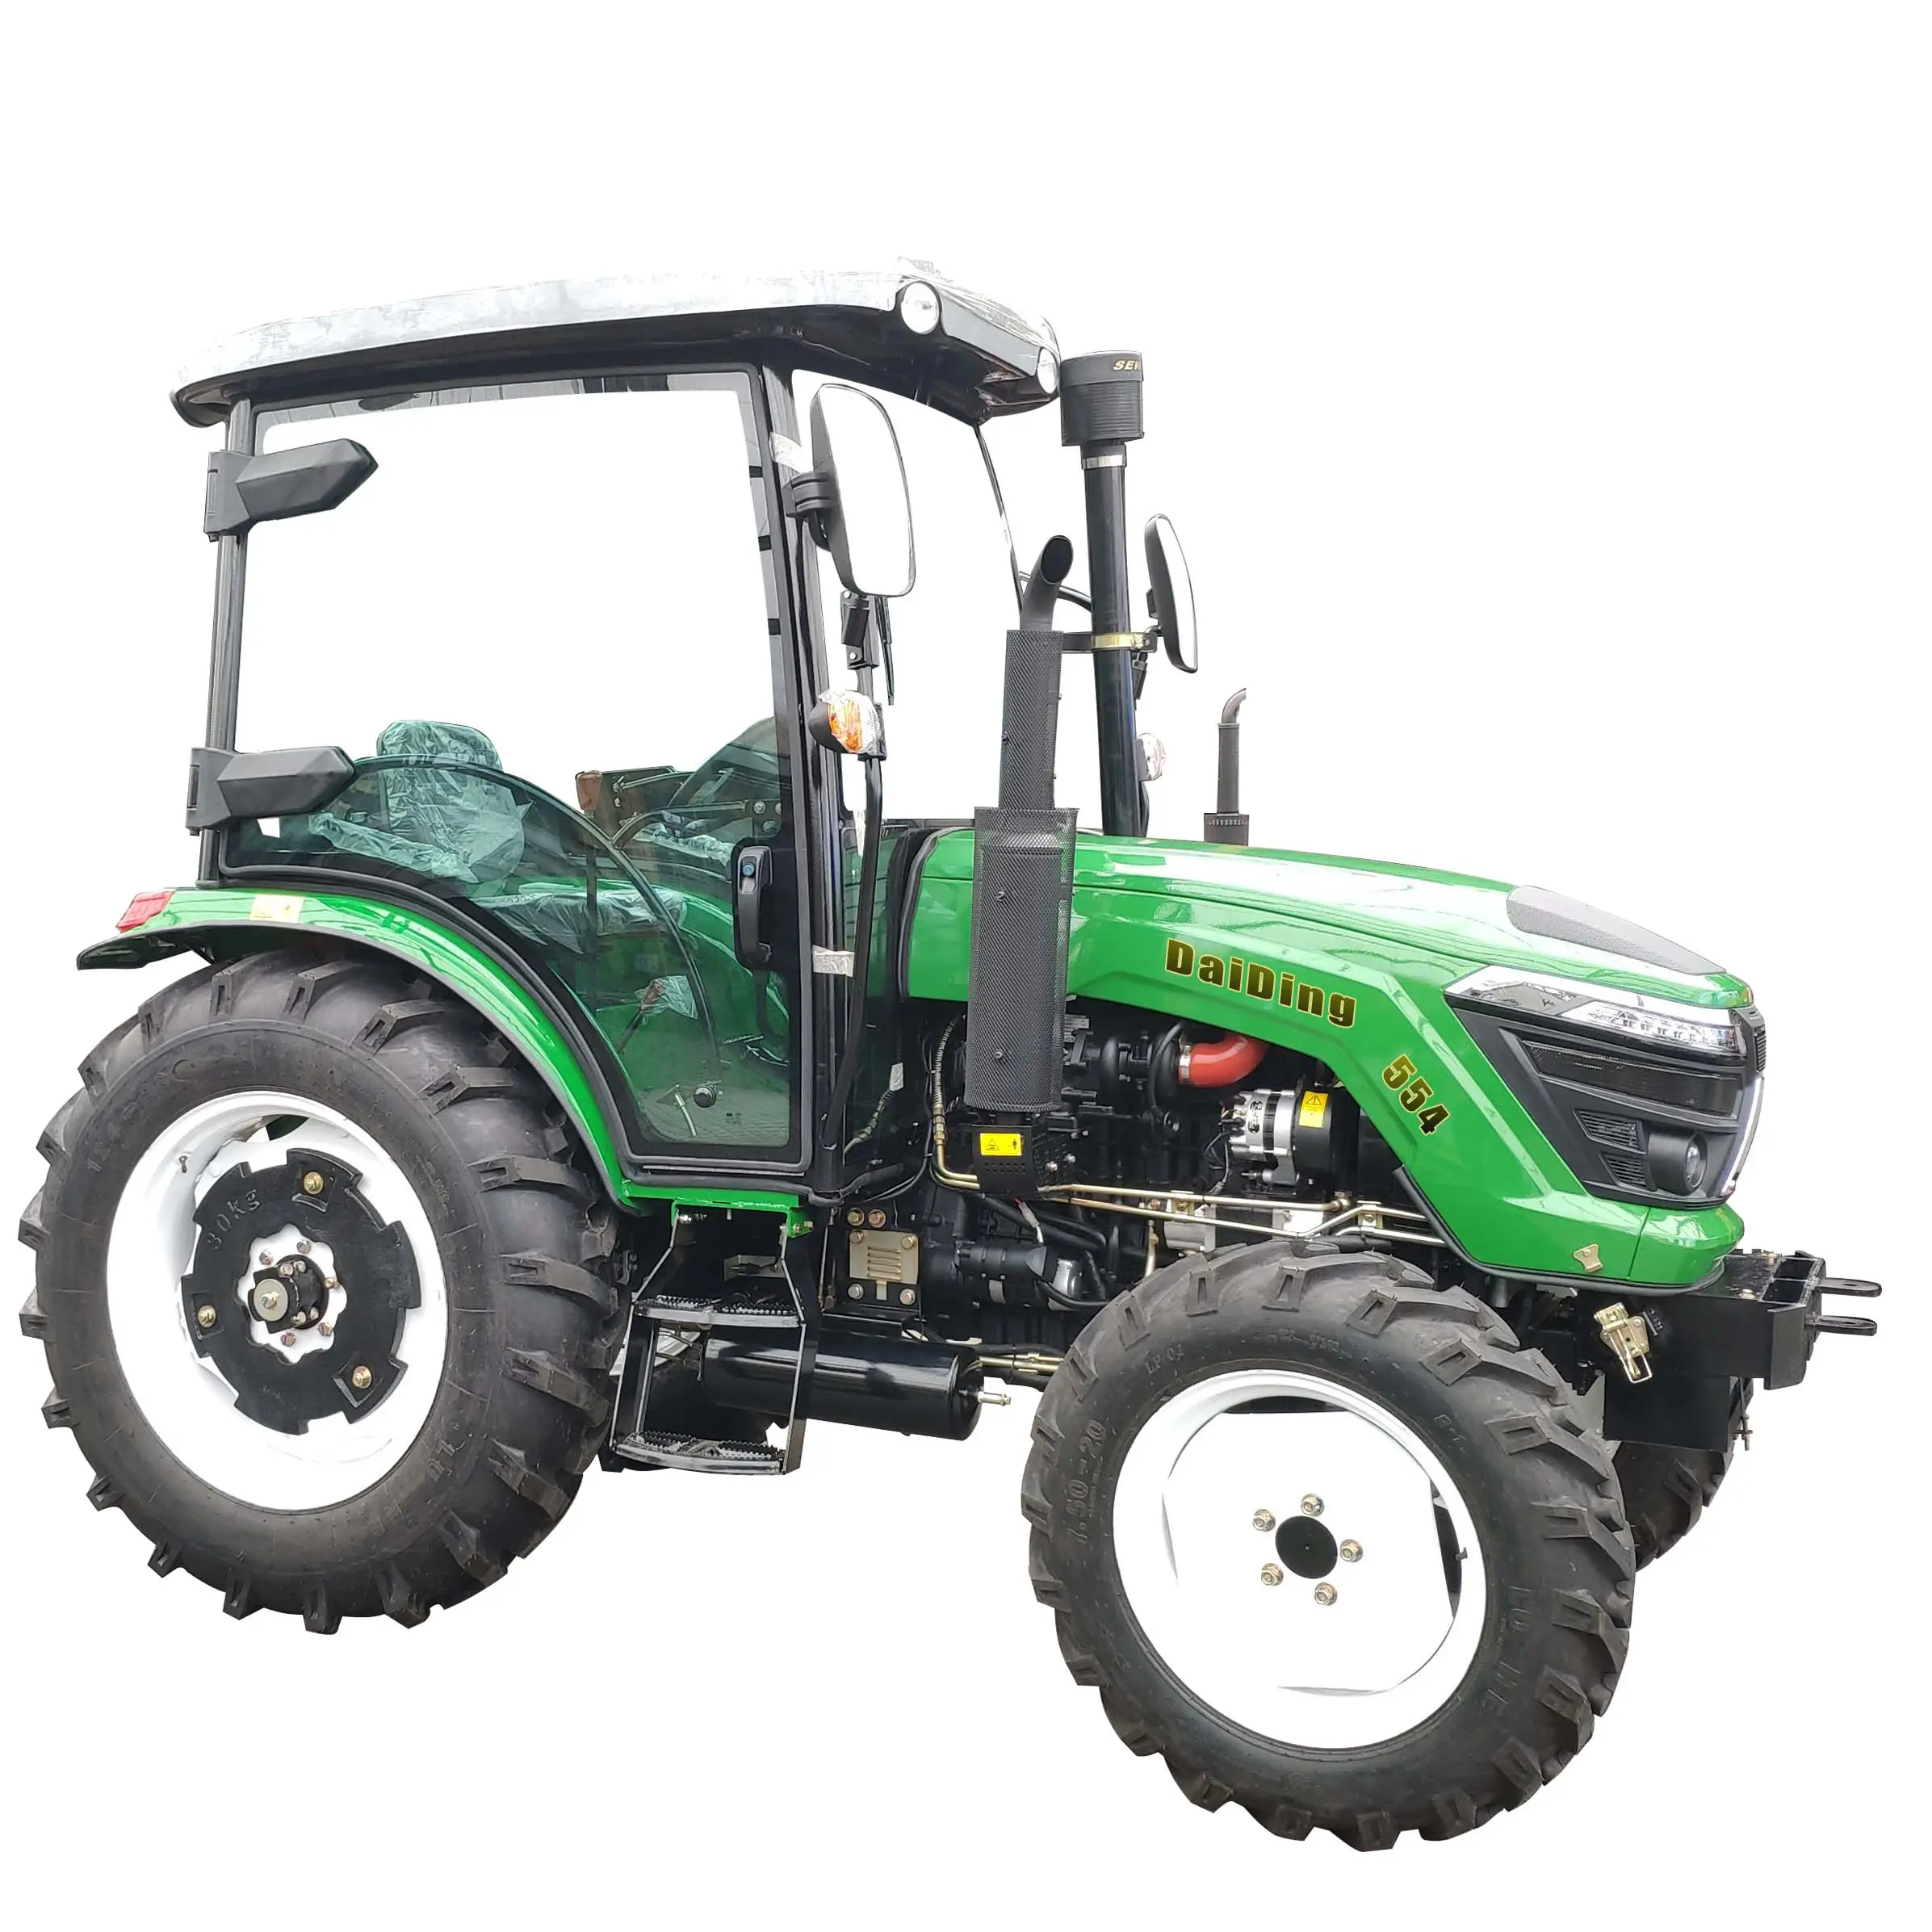 Nuova moda 4wd macchine agricole 55hp Made In cina trattore agricolo. Trattore agricolo